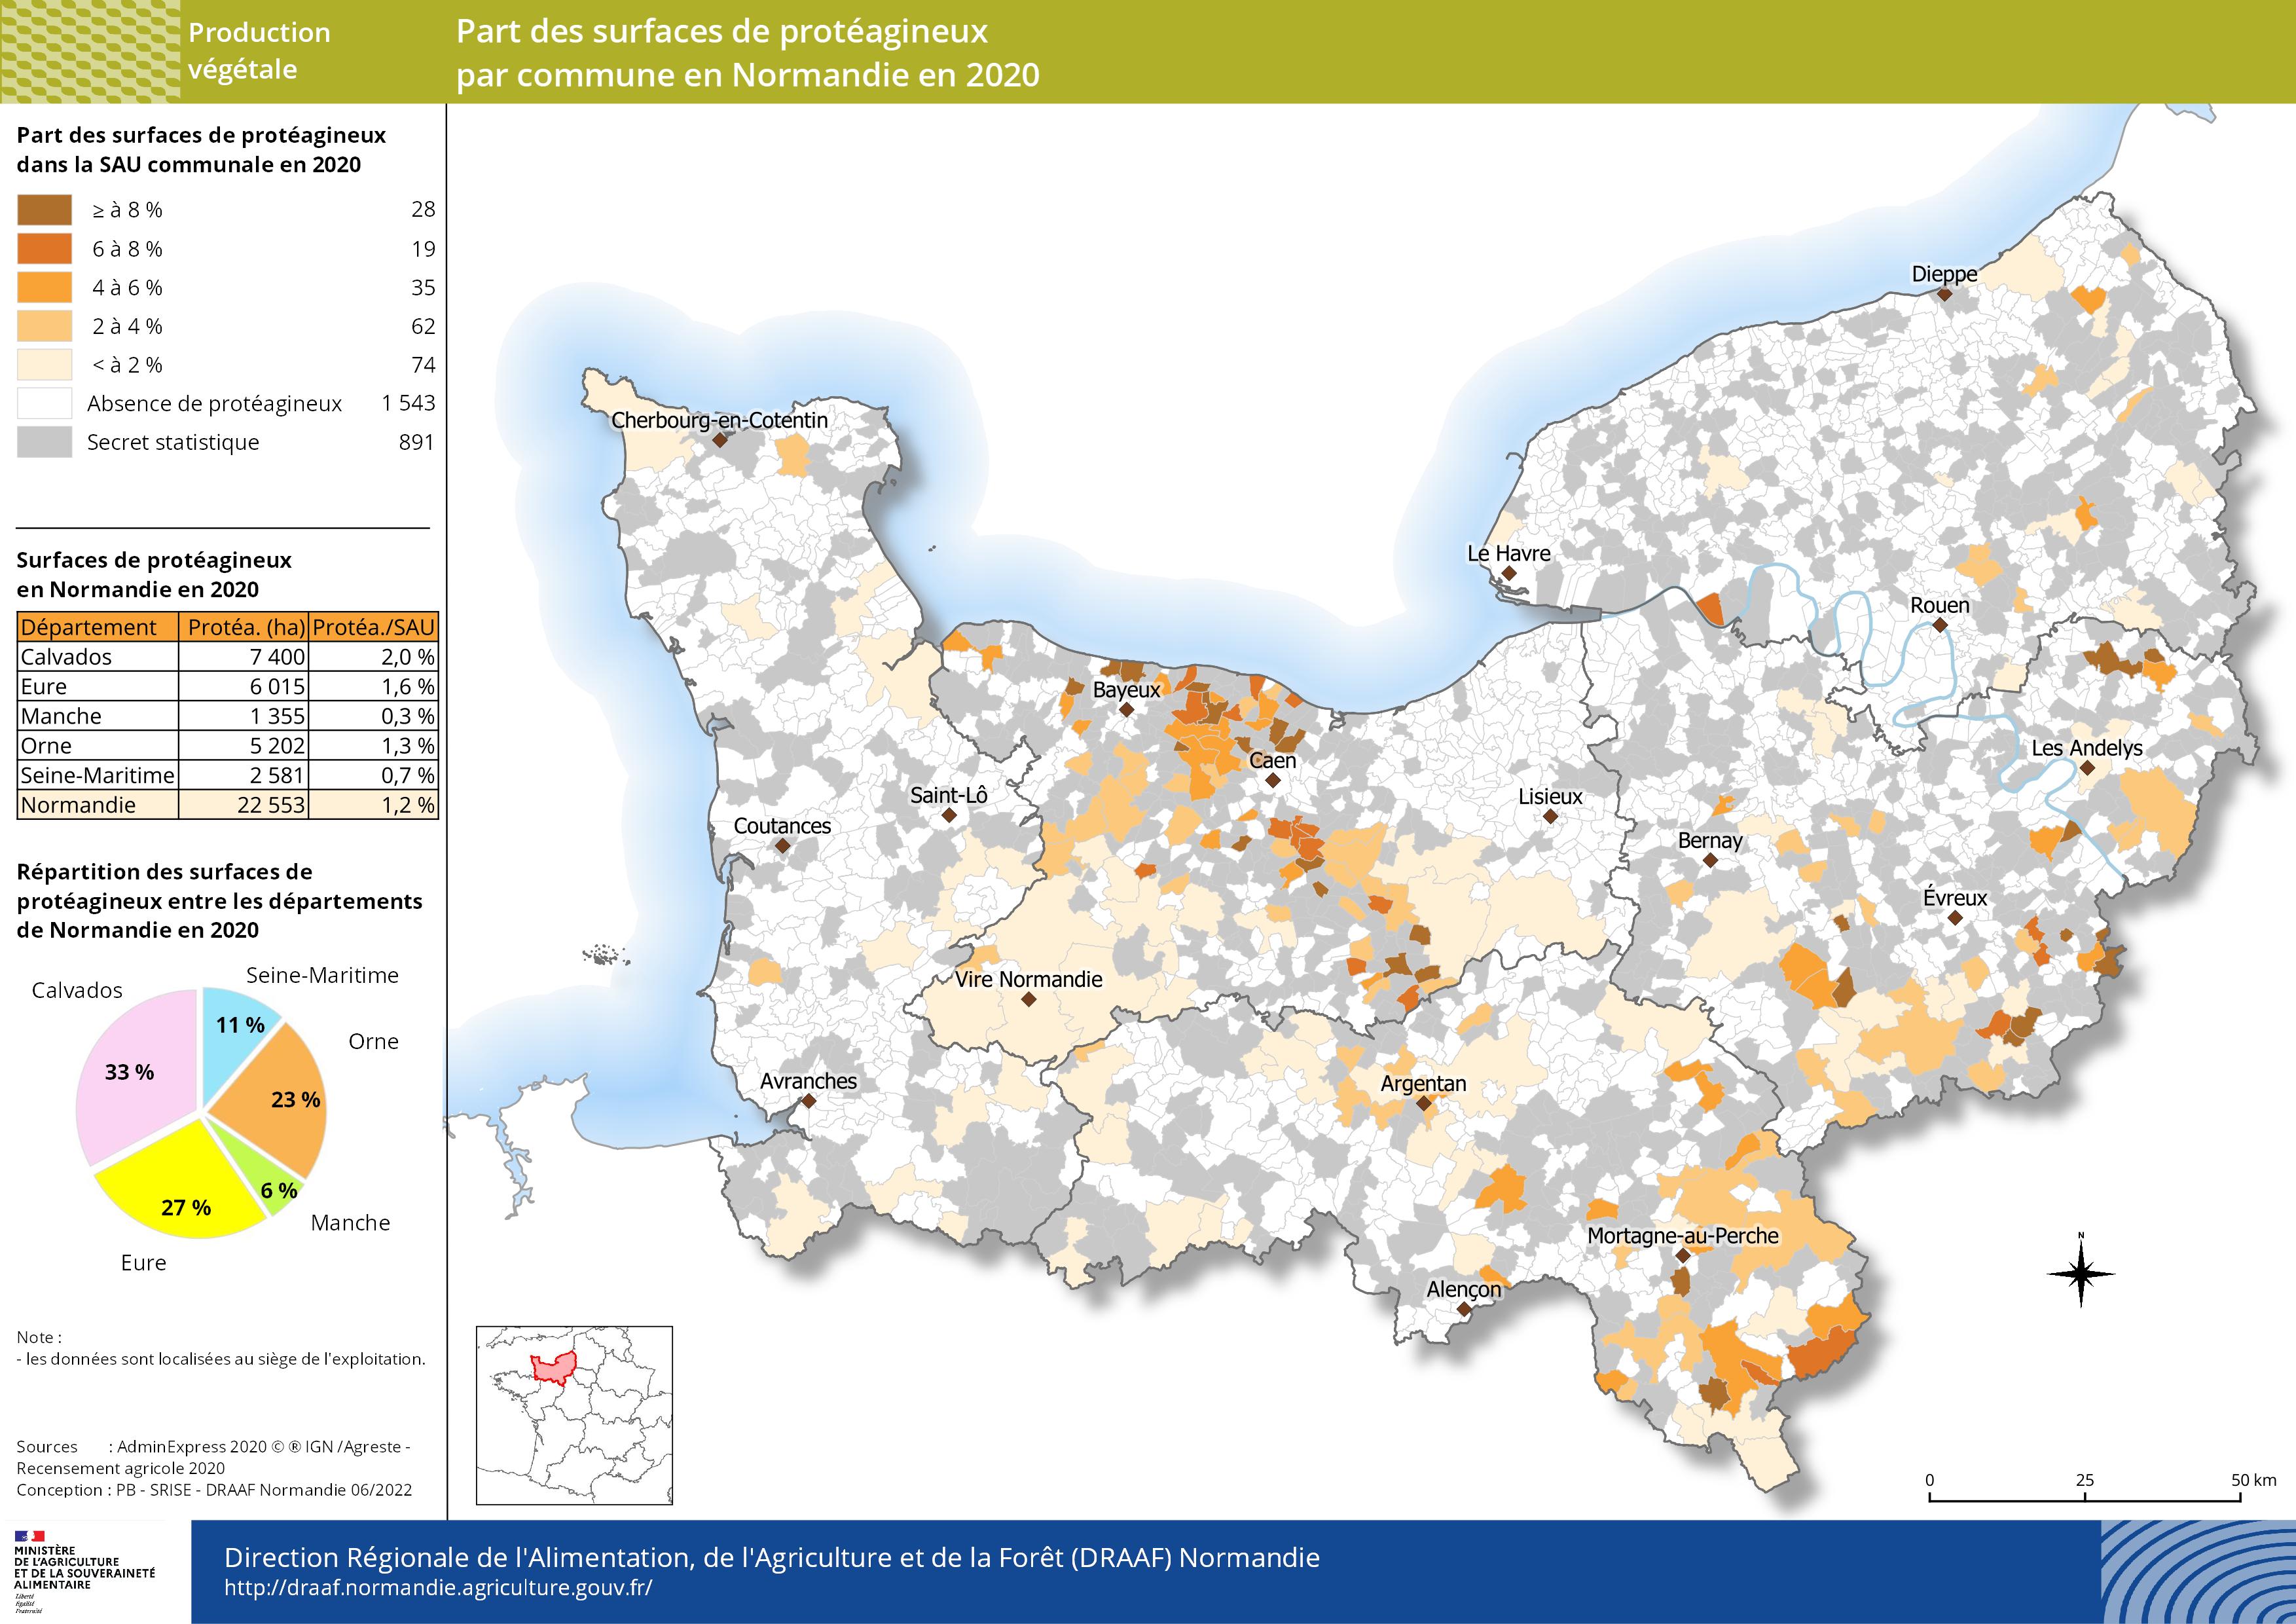 carte représentant la part des surfaces de protéagineux par commune en Normandie en 2020